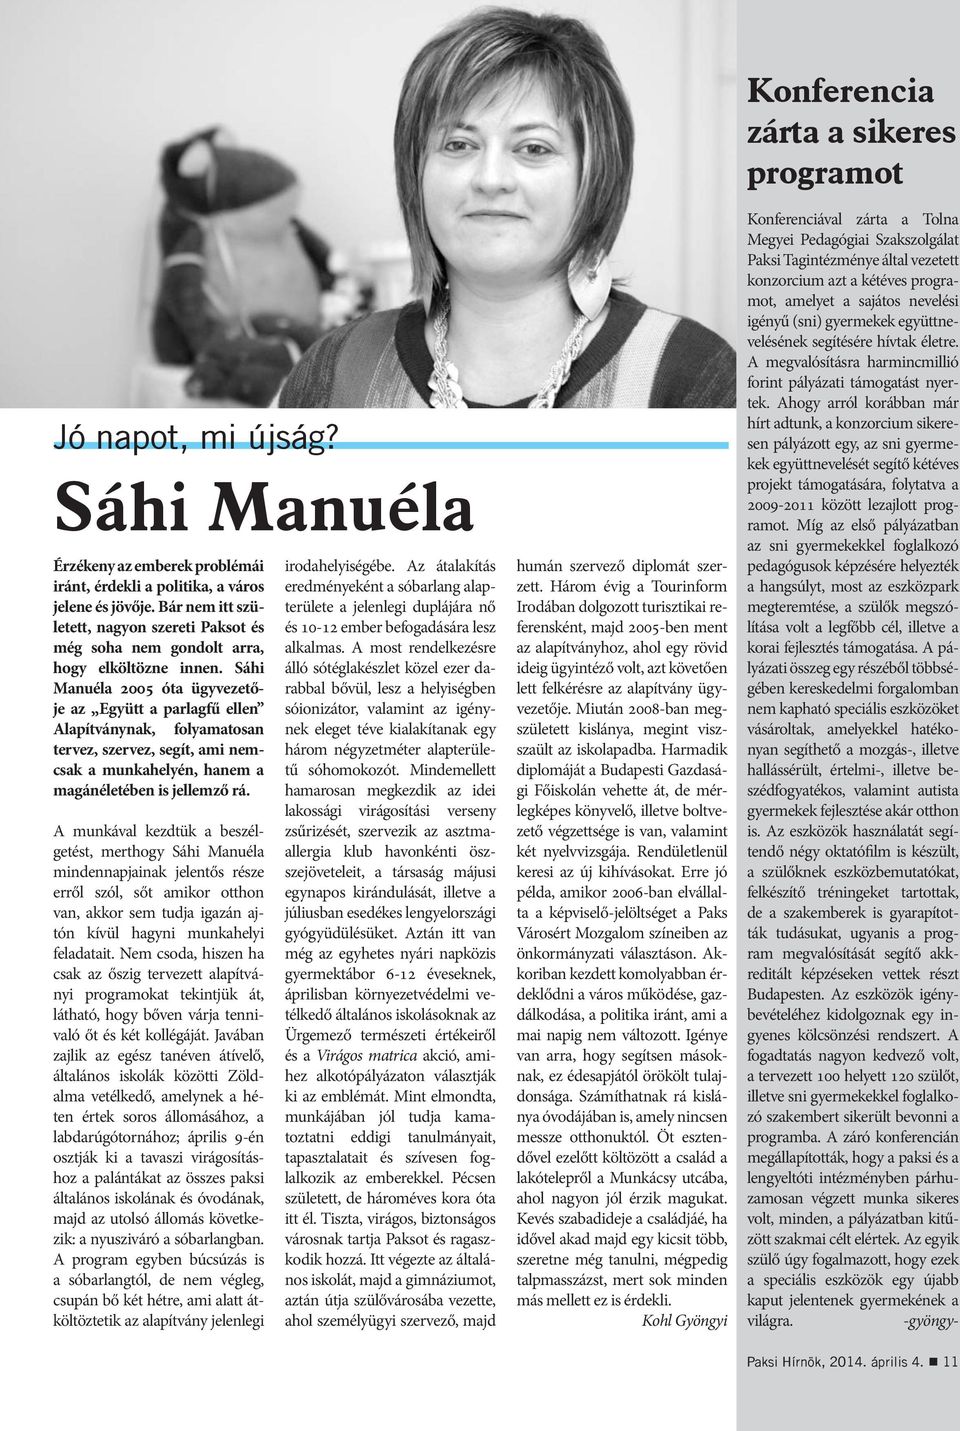 Sáhi Manuéla 2005 óta ügyvezetője az Együtt a parlagfű ellen Alapítványnak, folyamatosan tervez, szervez, segít, ami nemcsak a munkahelyén, hanem a magánéletében is jellemző rá.